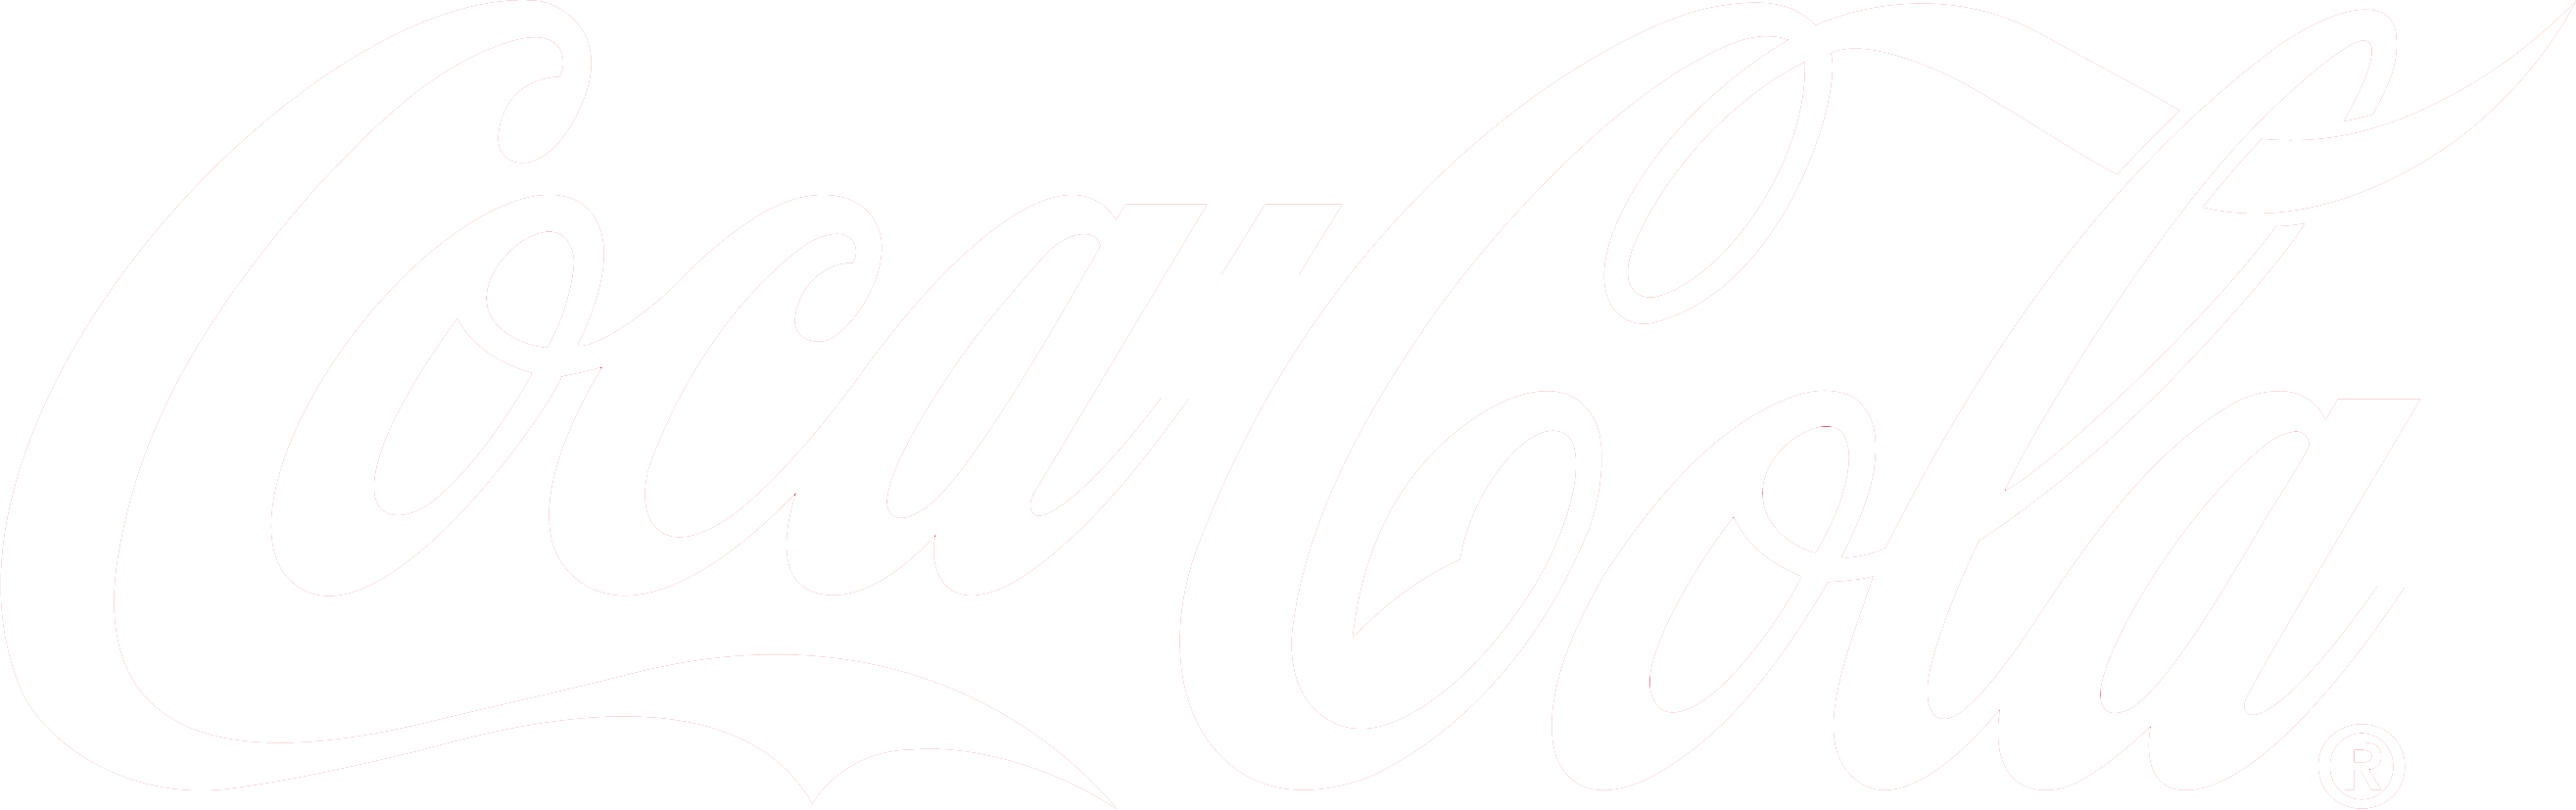 Coca Cola_LOGO PNG images 